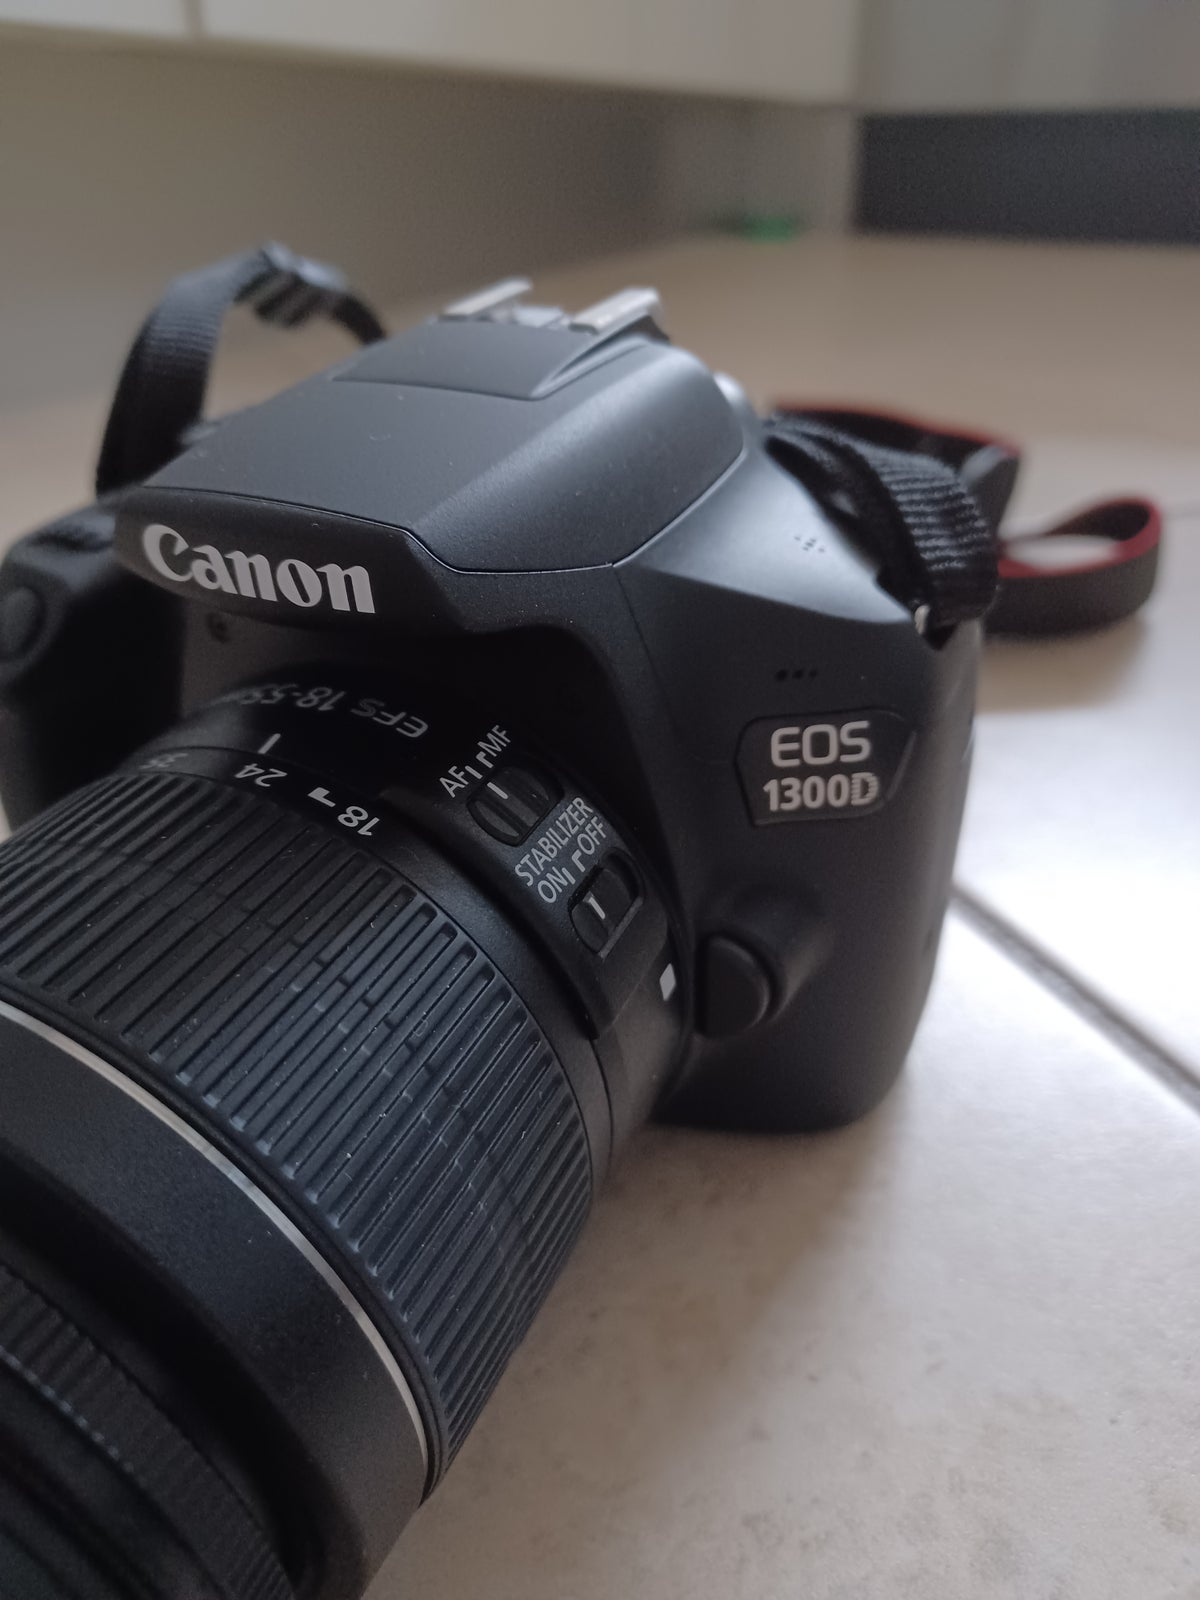 Canon, EOS 1300D, 18 megapixels